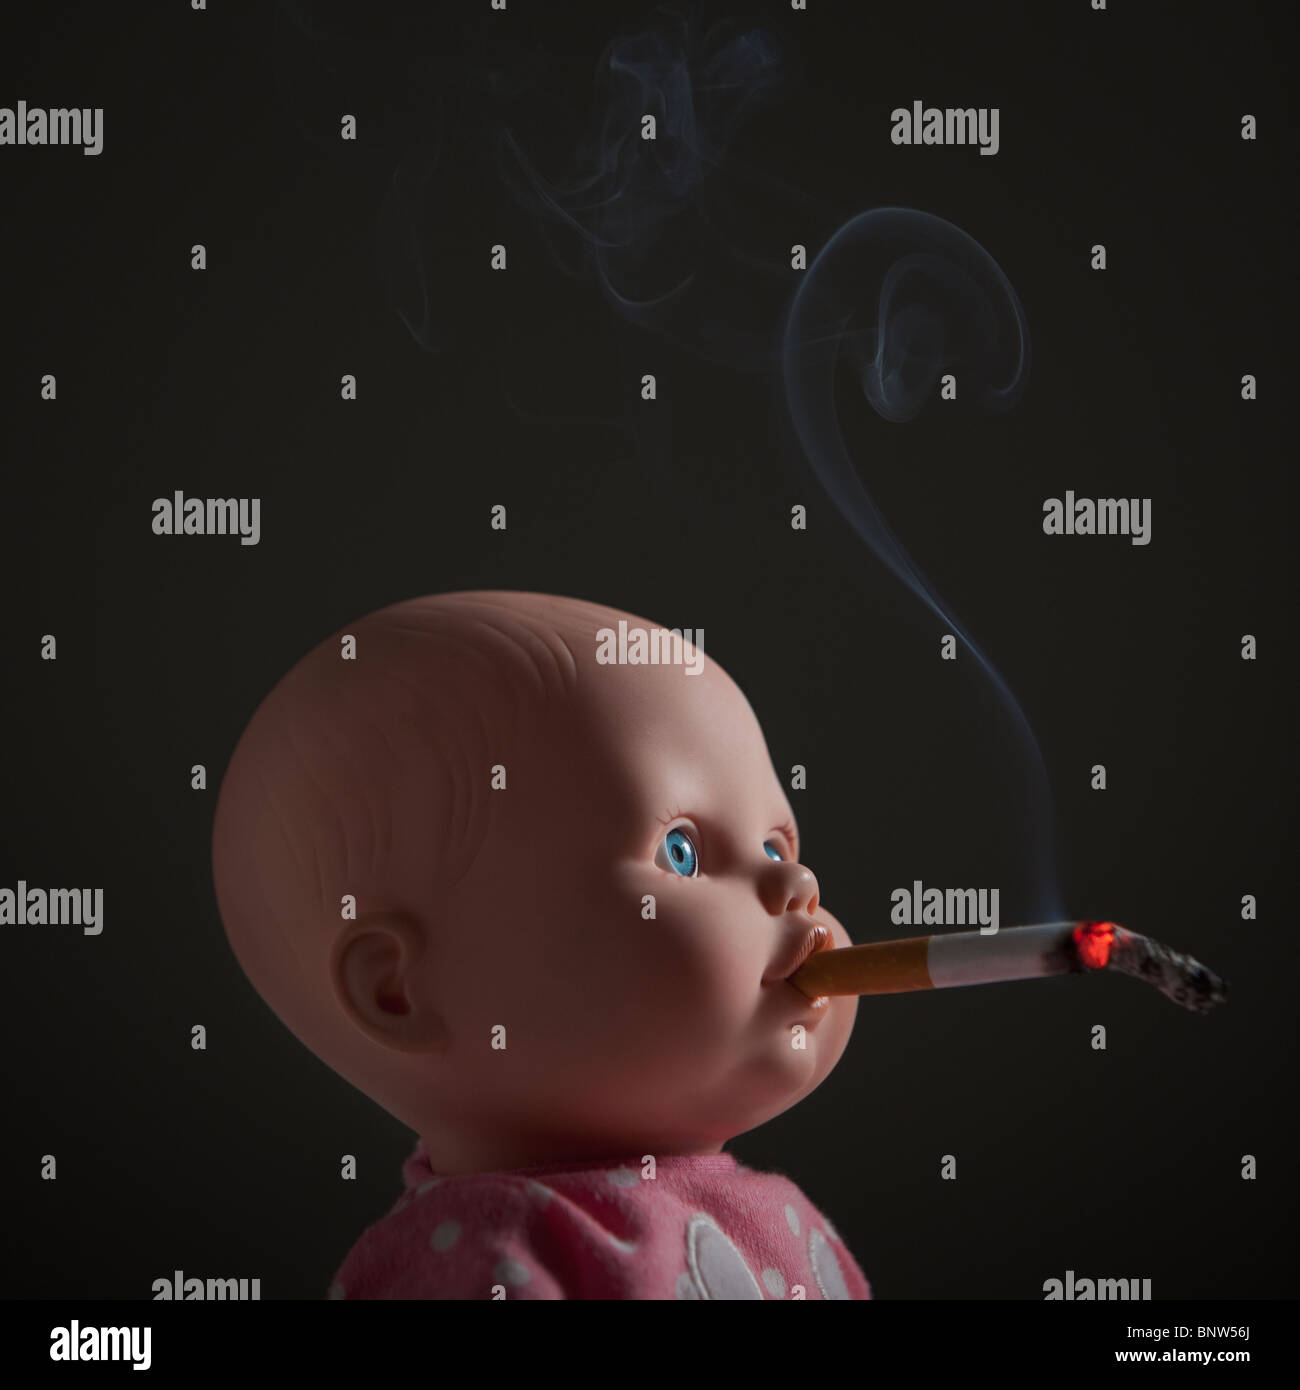 Zigarette im Mund der Puppe Stockfoto